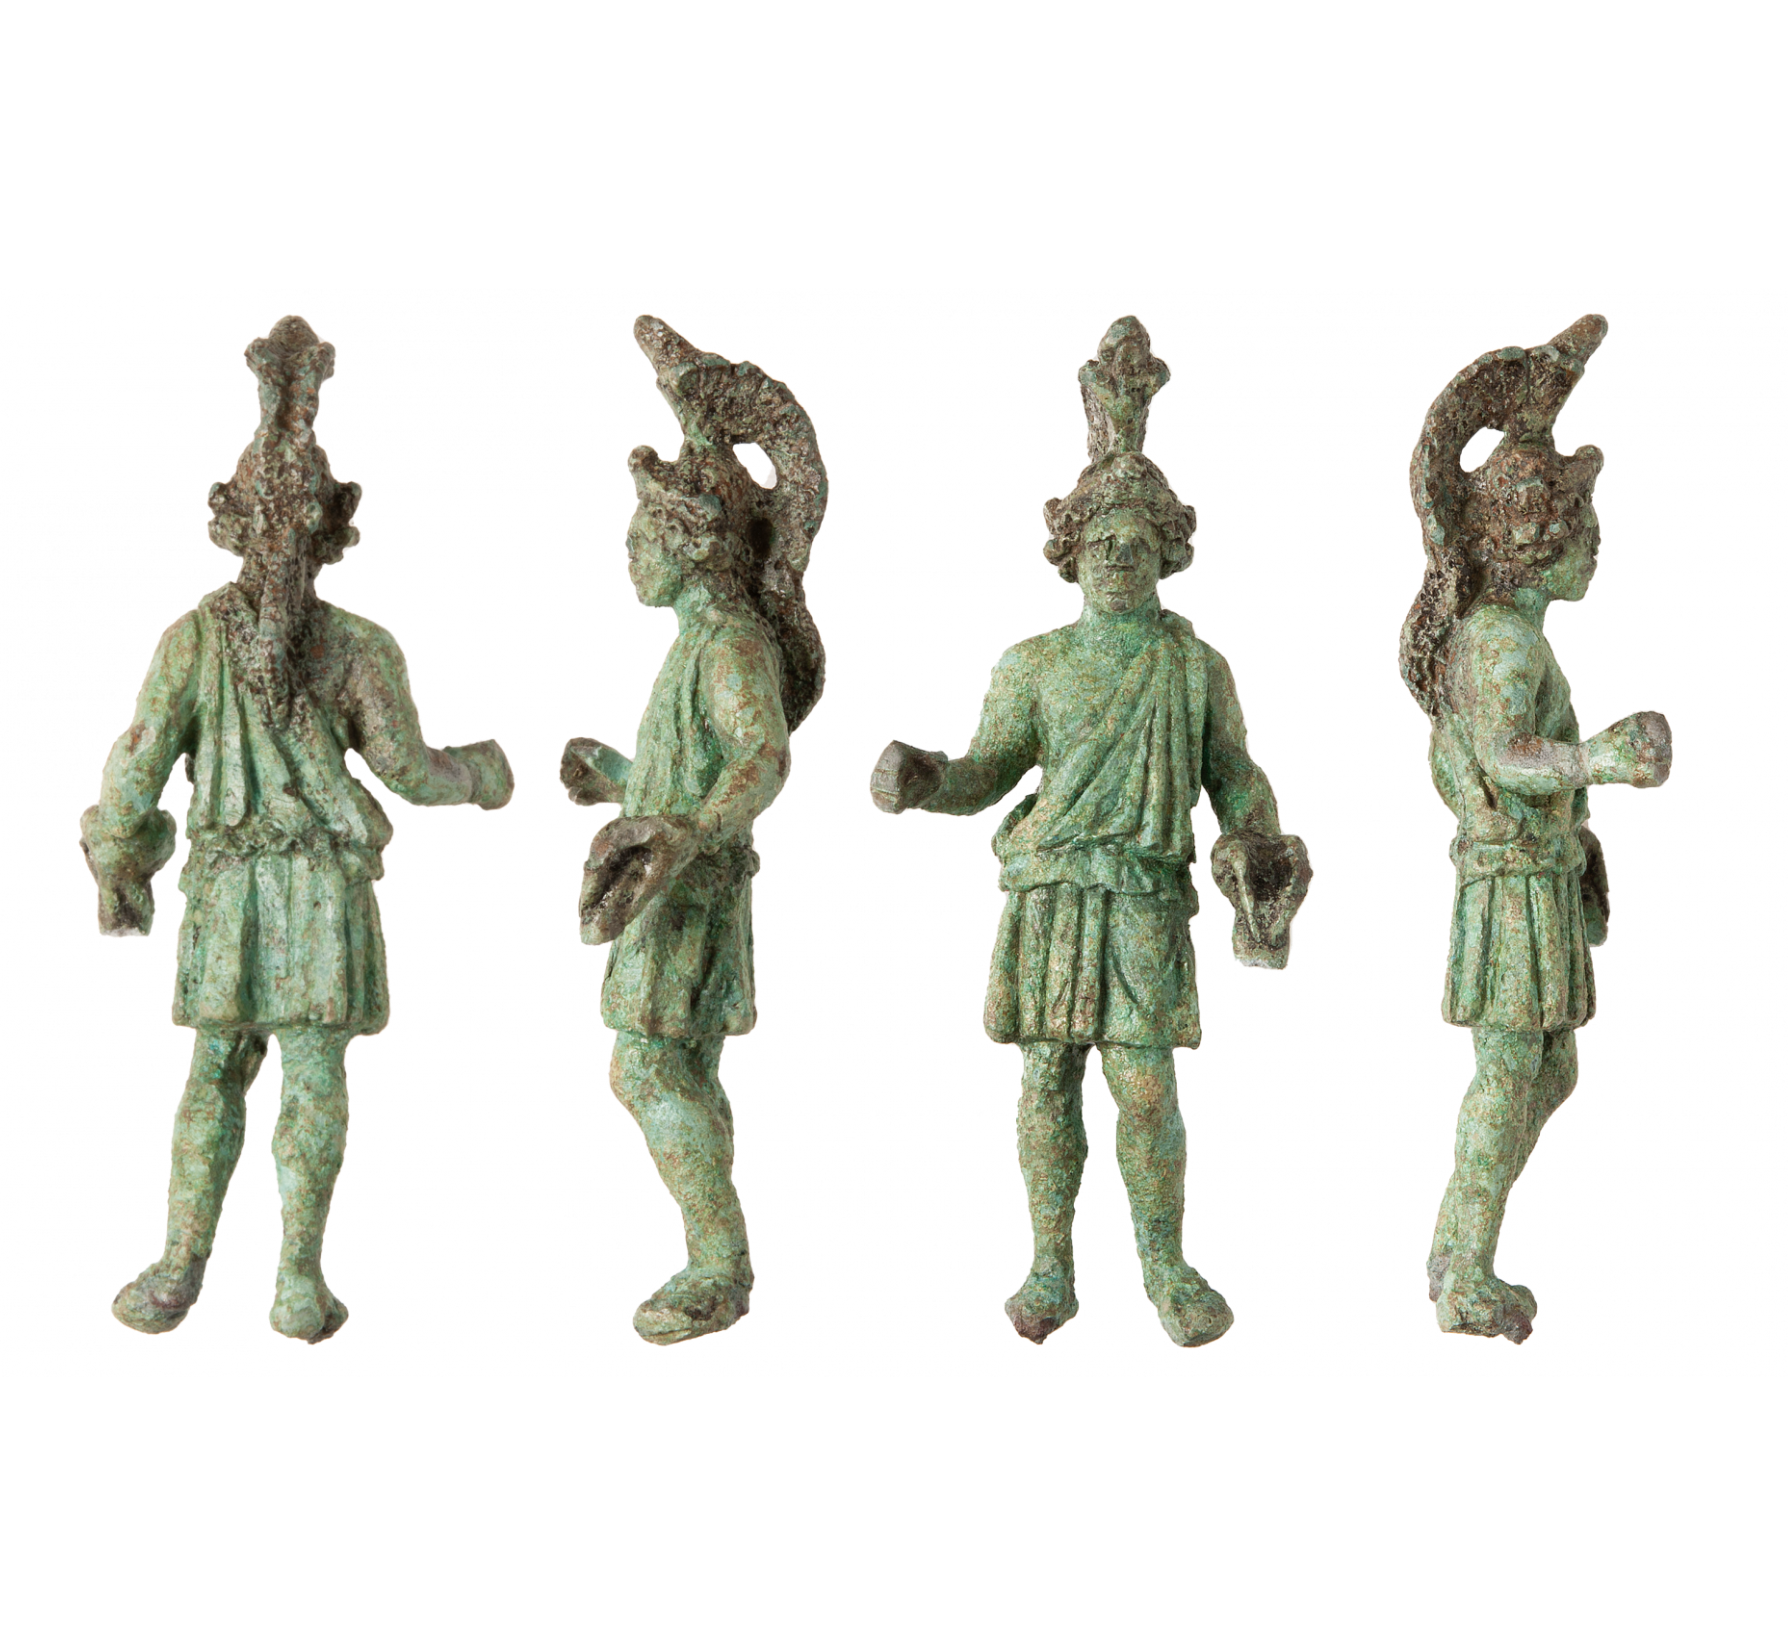 Une statuette en bronze datant de l'époque gallo-romaine a été découverte près de Rennes et représenterait le dieu Mars. © Emmanuelle Collado, Inrap